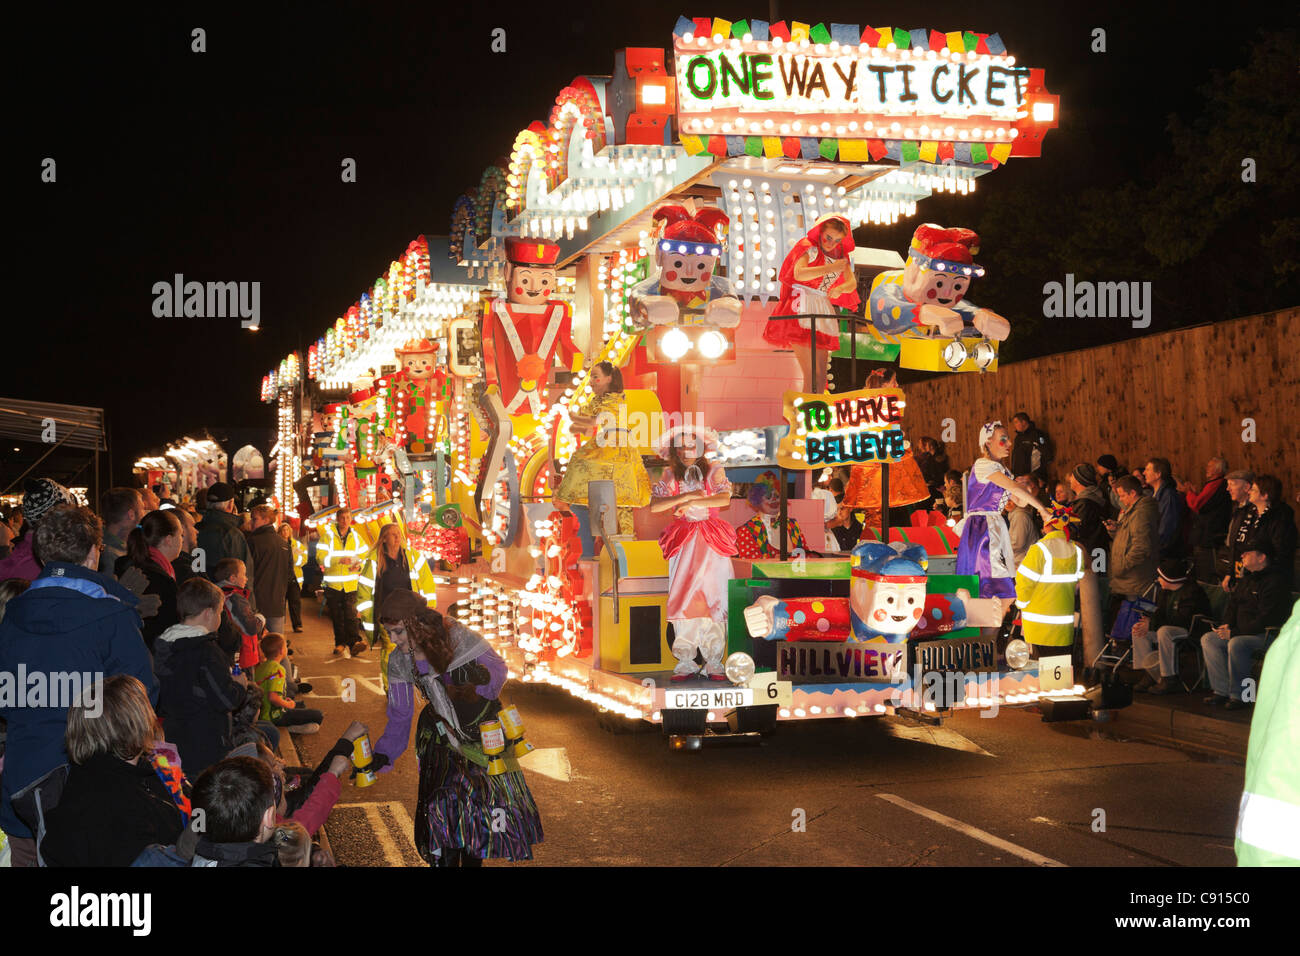 One-Way-Ticket (zu glauben) von Hillview Junior Karnevalsverein. Stockfoto